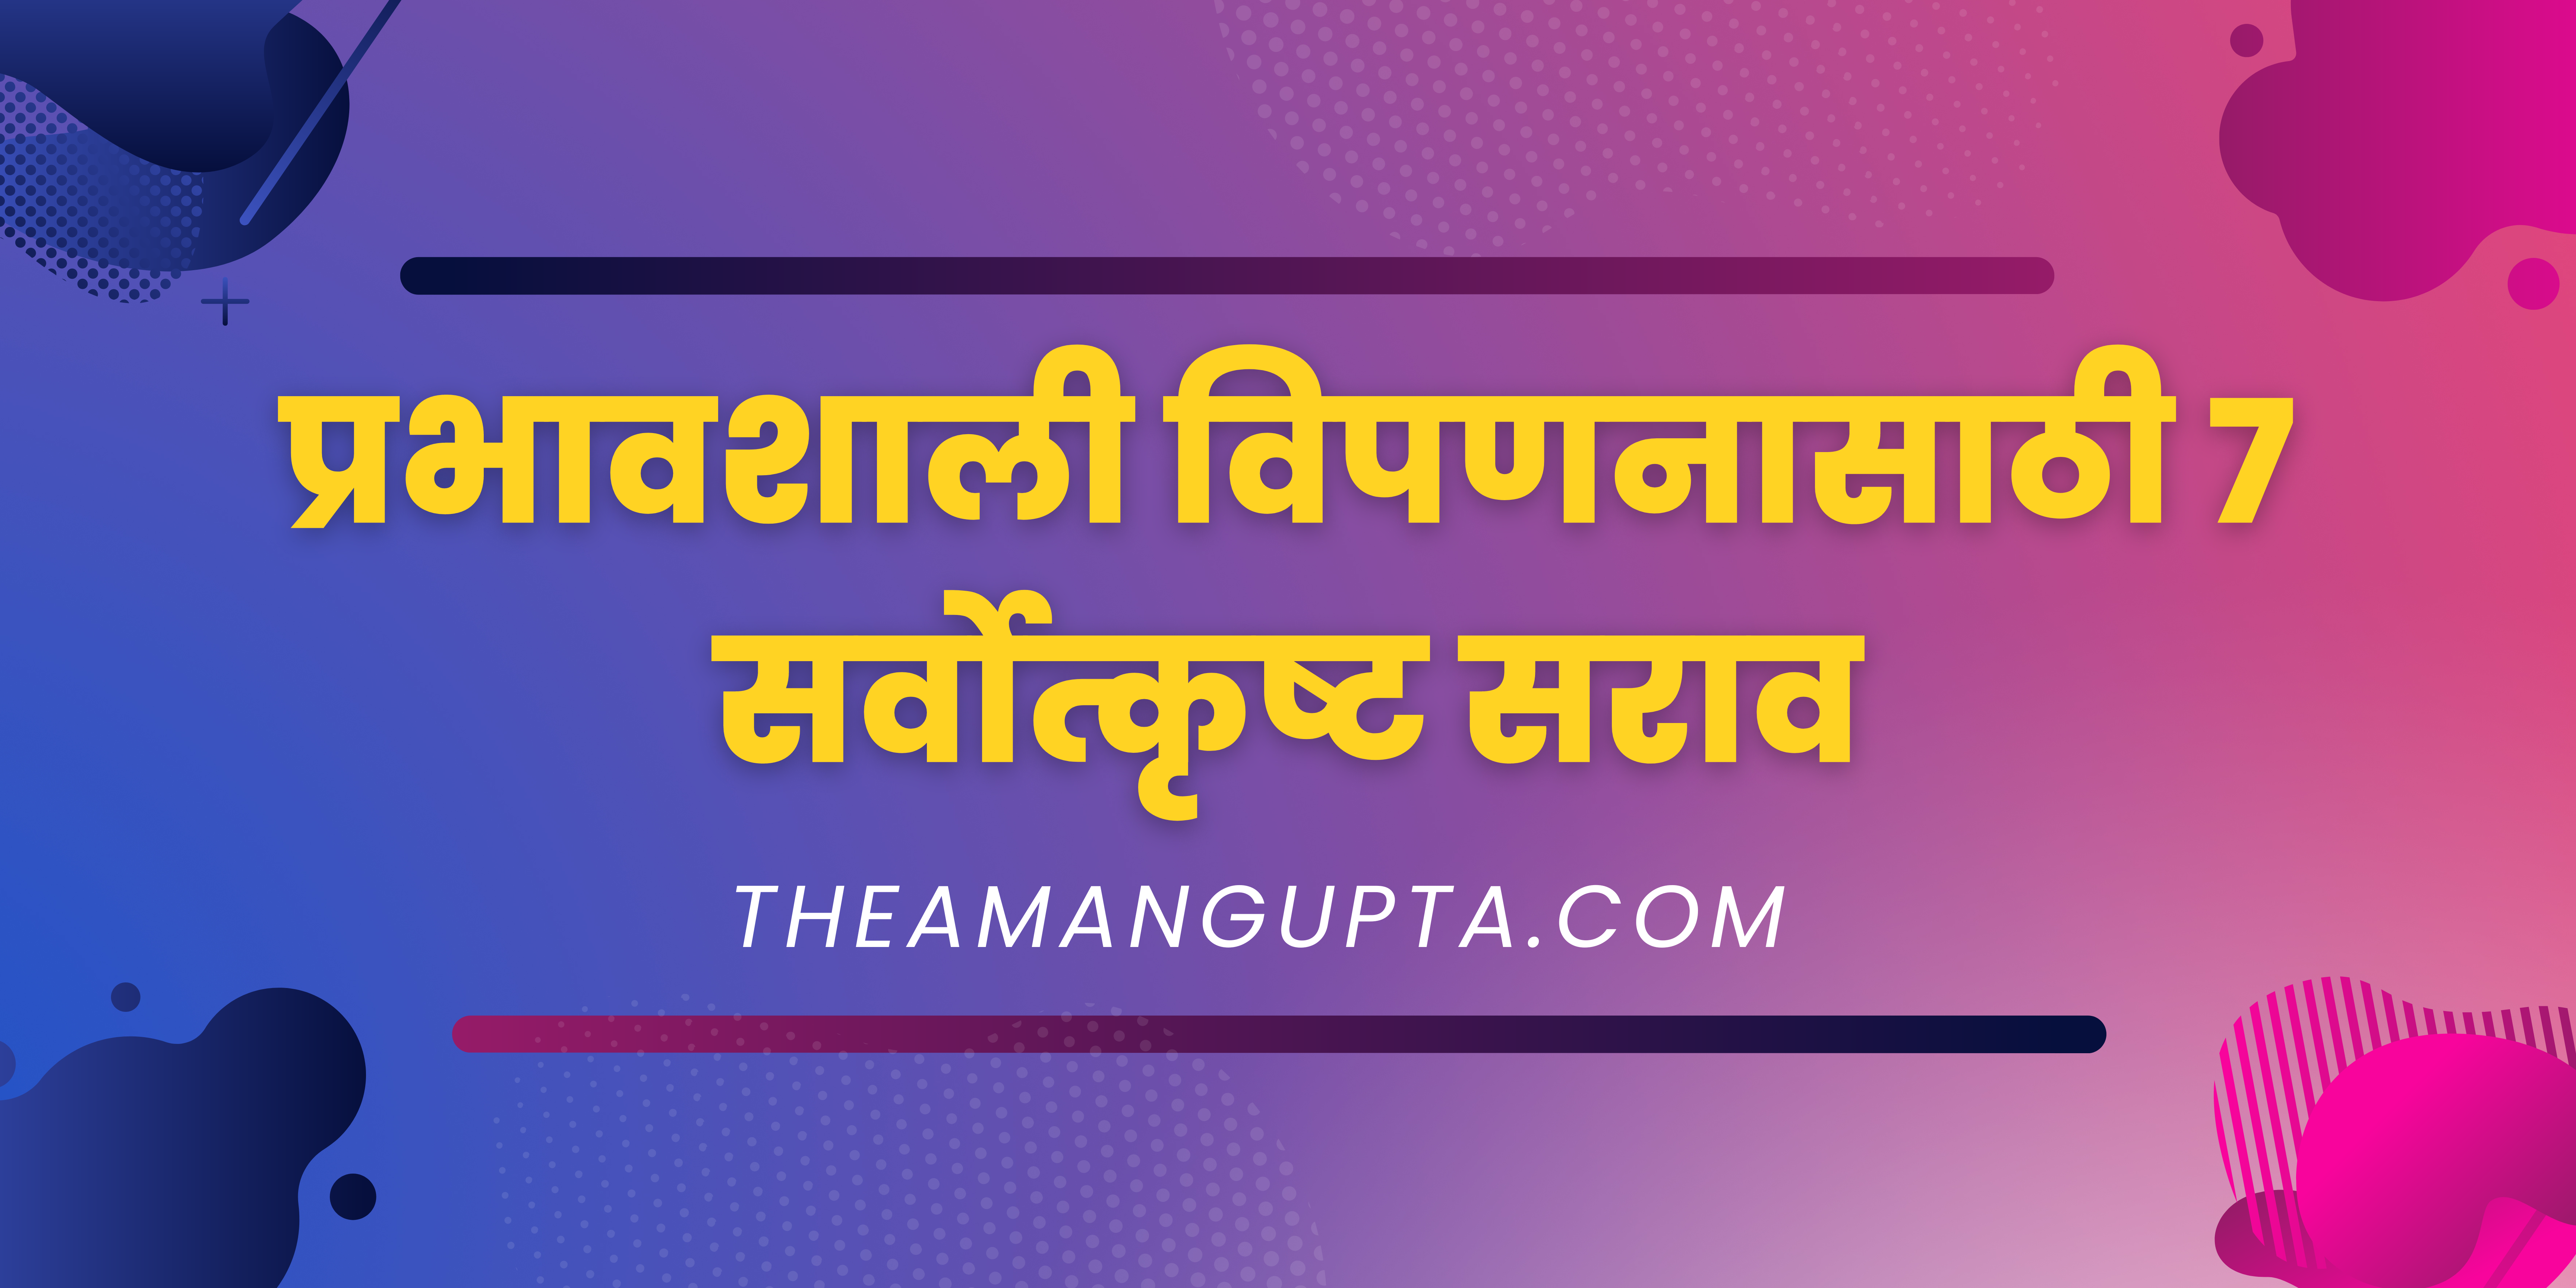 प्रभावशाली विपणनासाठी 7 सर्वोत्कृष्ट सराव|प्रभावशाली विपणनासाठी 7 सर्वोत्कृष्ट सराव|Theamangupta|Theamangupta